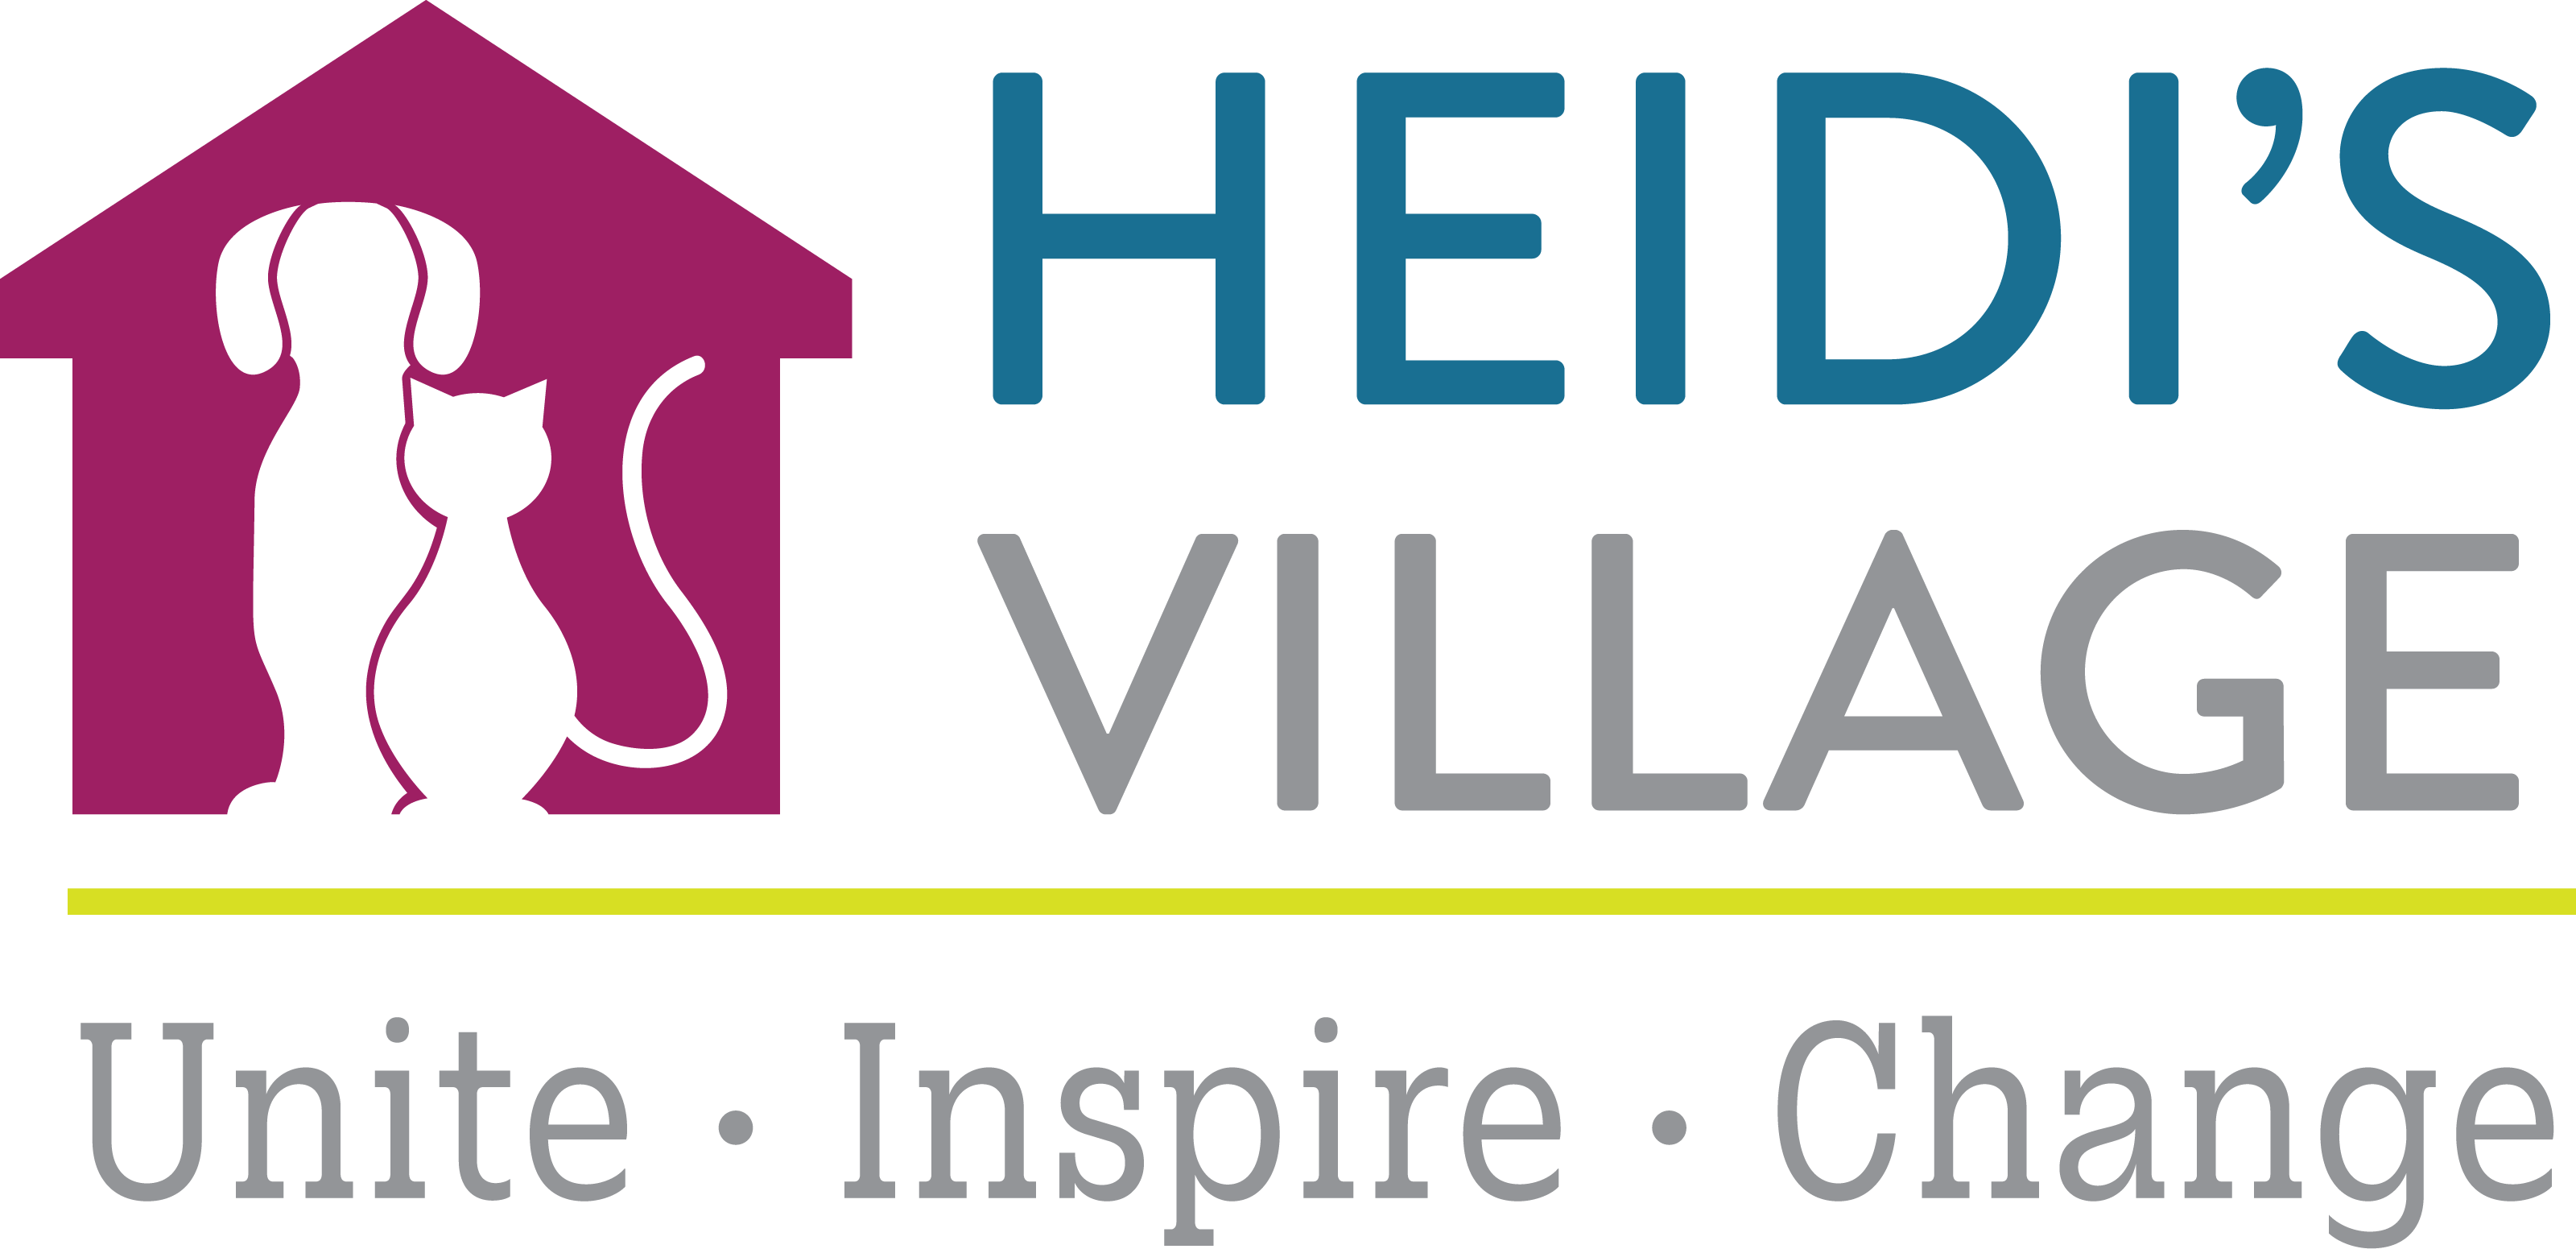 Heidi's Village